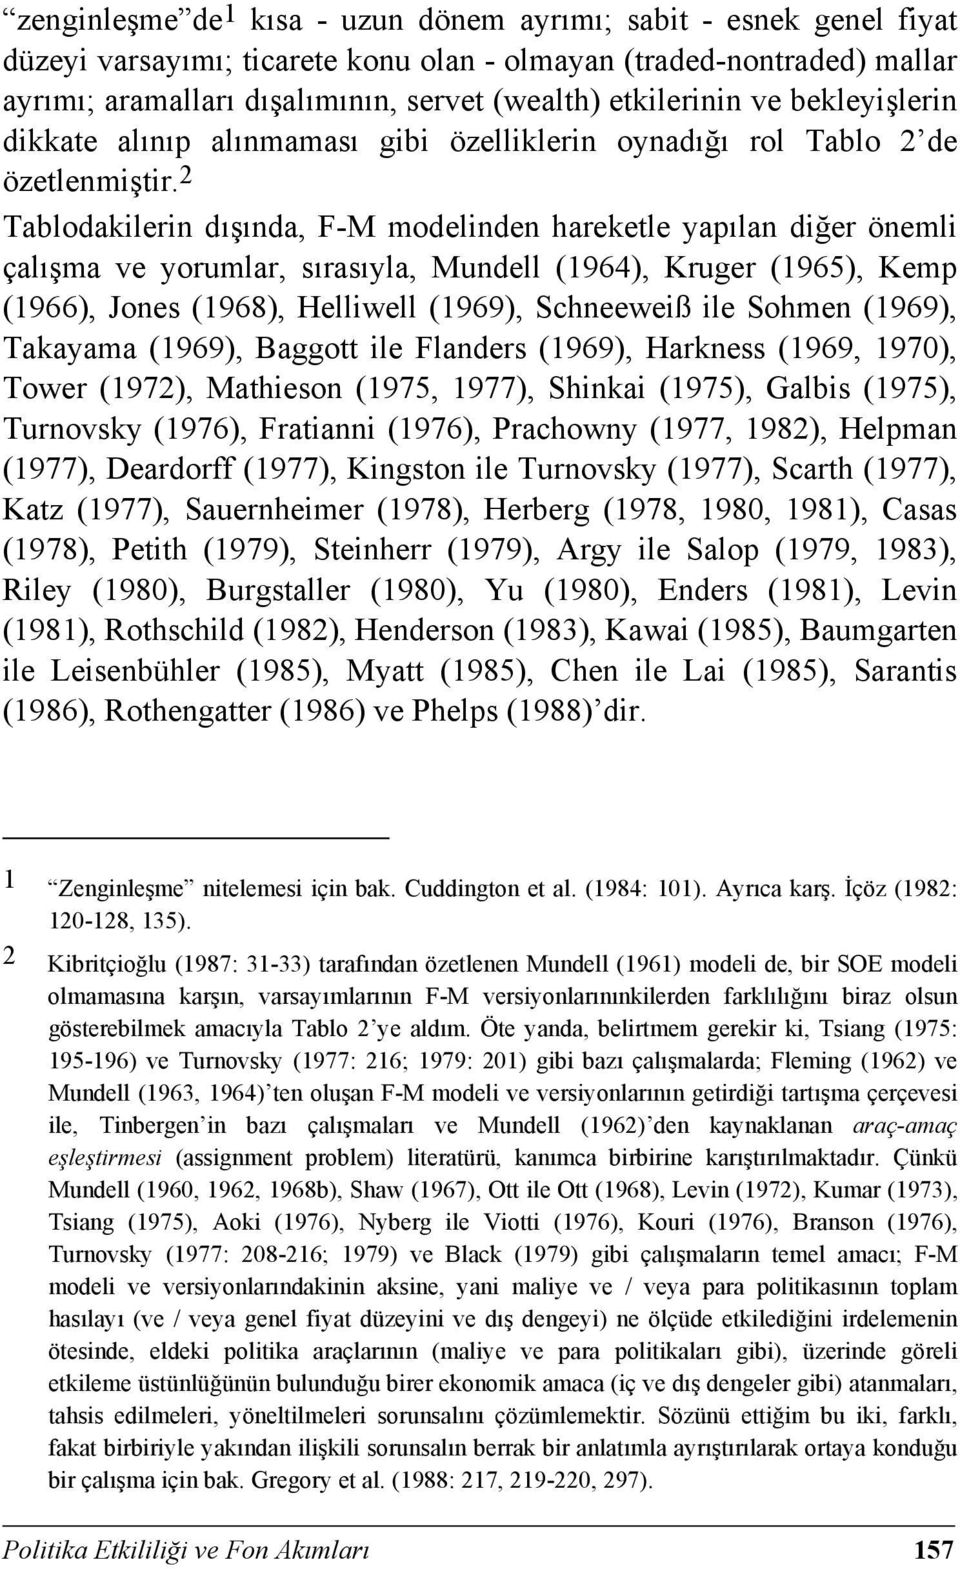 2 Tablodakilerin dışında, F-M modelinden hareketle yapılan diğer önemli çalışma ve yorumlar, sırasıyla, Mundell (1964), Kruger (1965), Kemp (1966), Jones (1968), Helliwell (1969), Schneeweiß ile